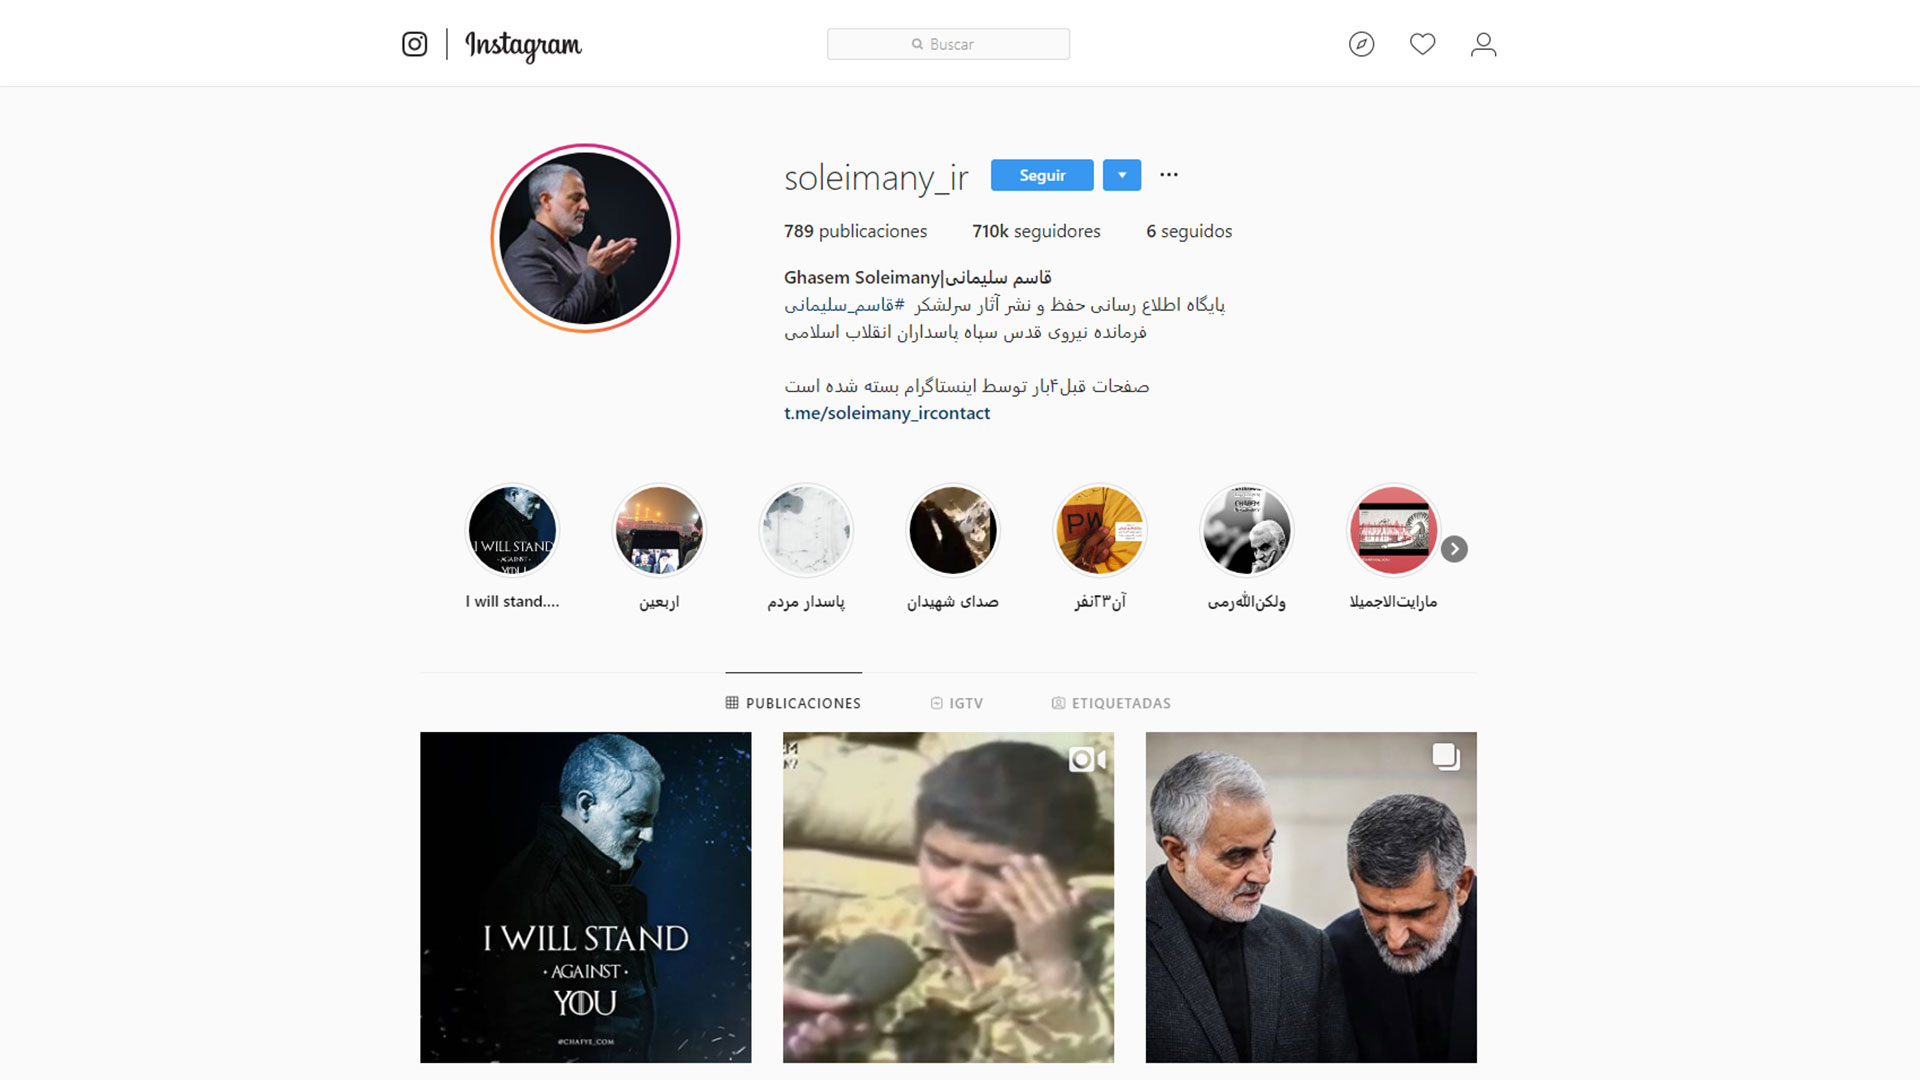 La cuenta de Instagram en la que fue publicada la respuesta de Irán